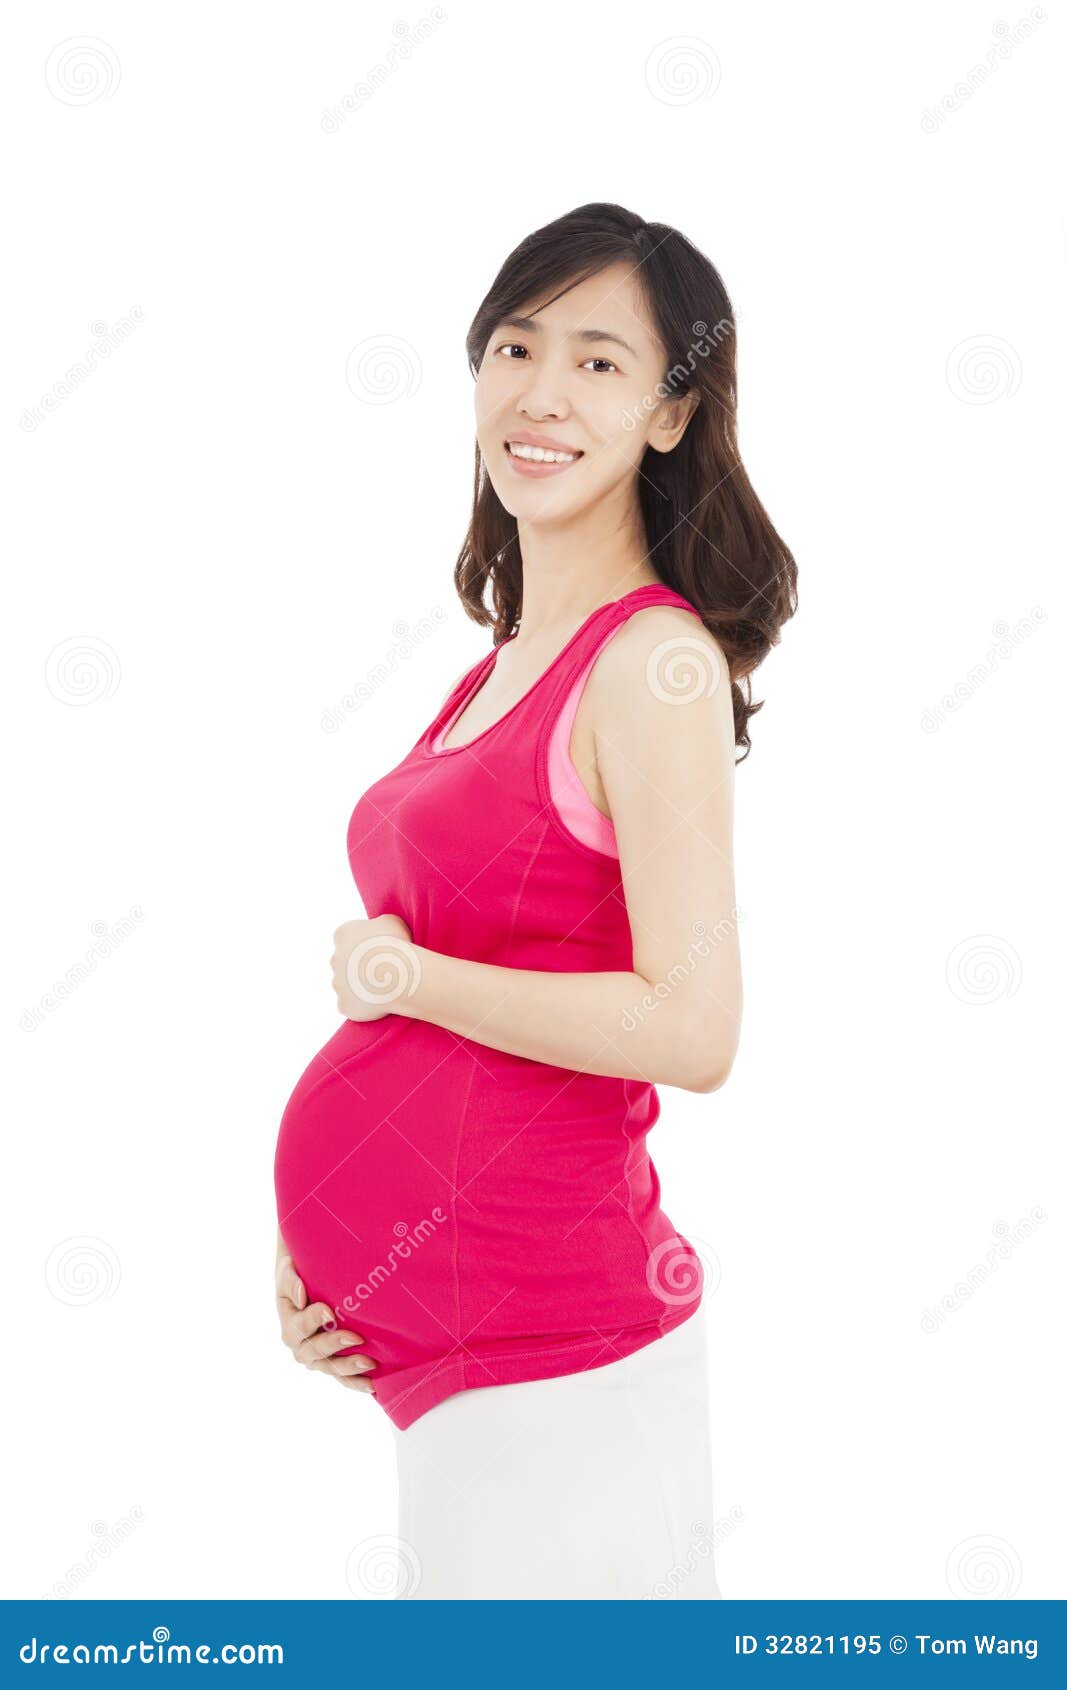 深圳孕妇照就应该这么拍！！深圳龙岗拍孕妇照-搜狐